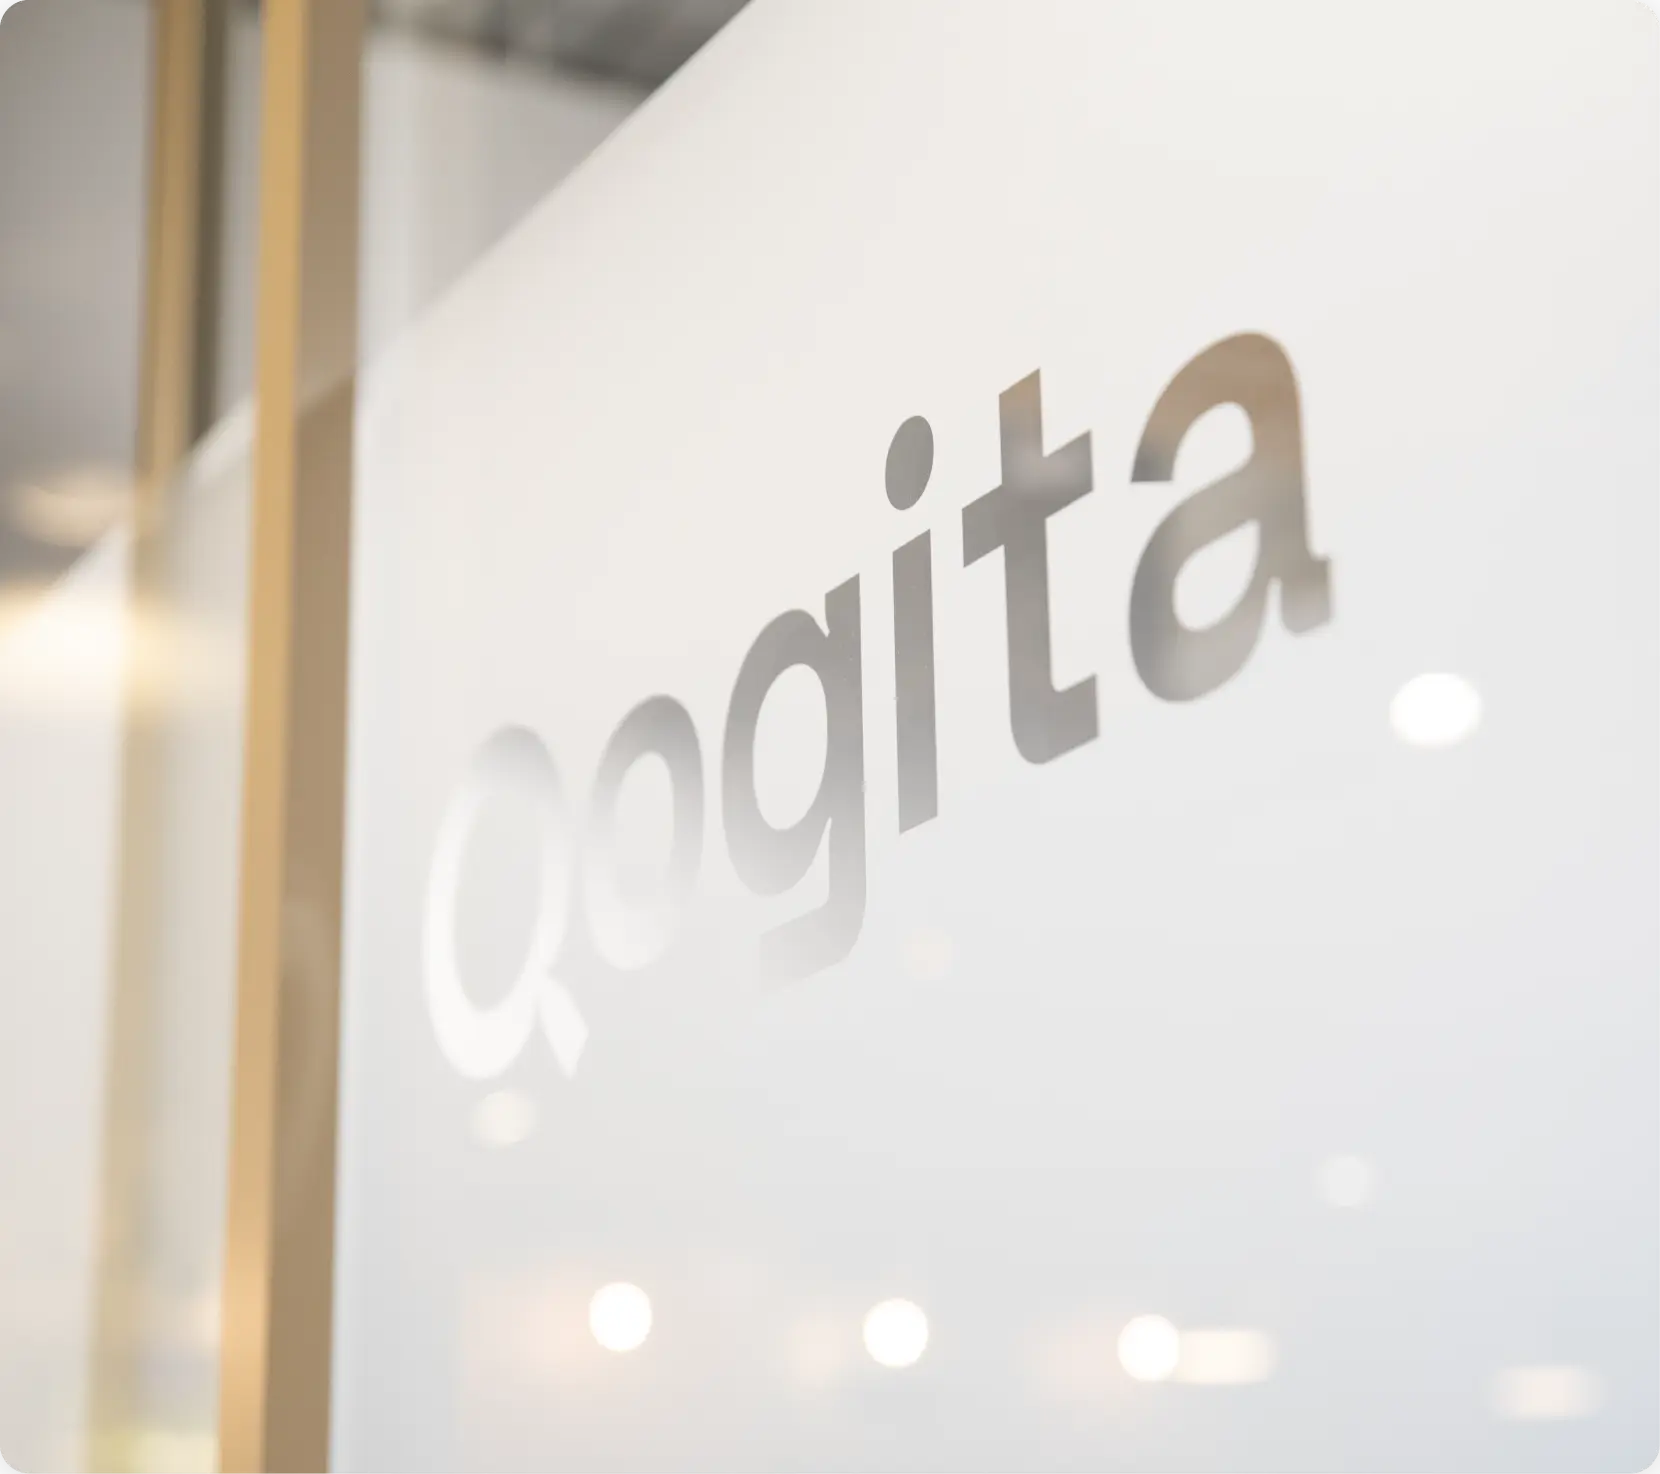 Qogita's name on a glass door